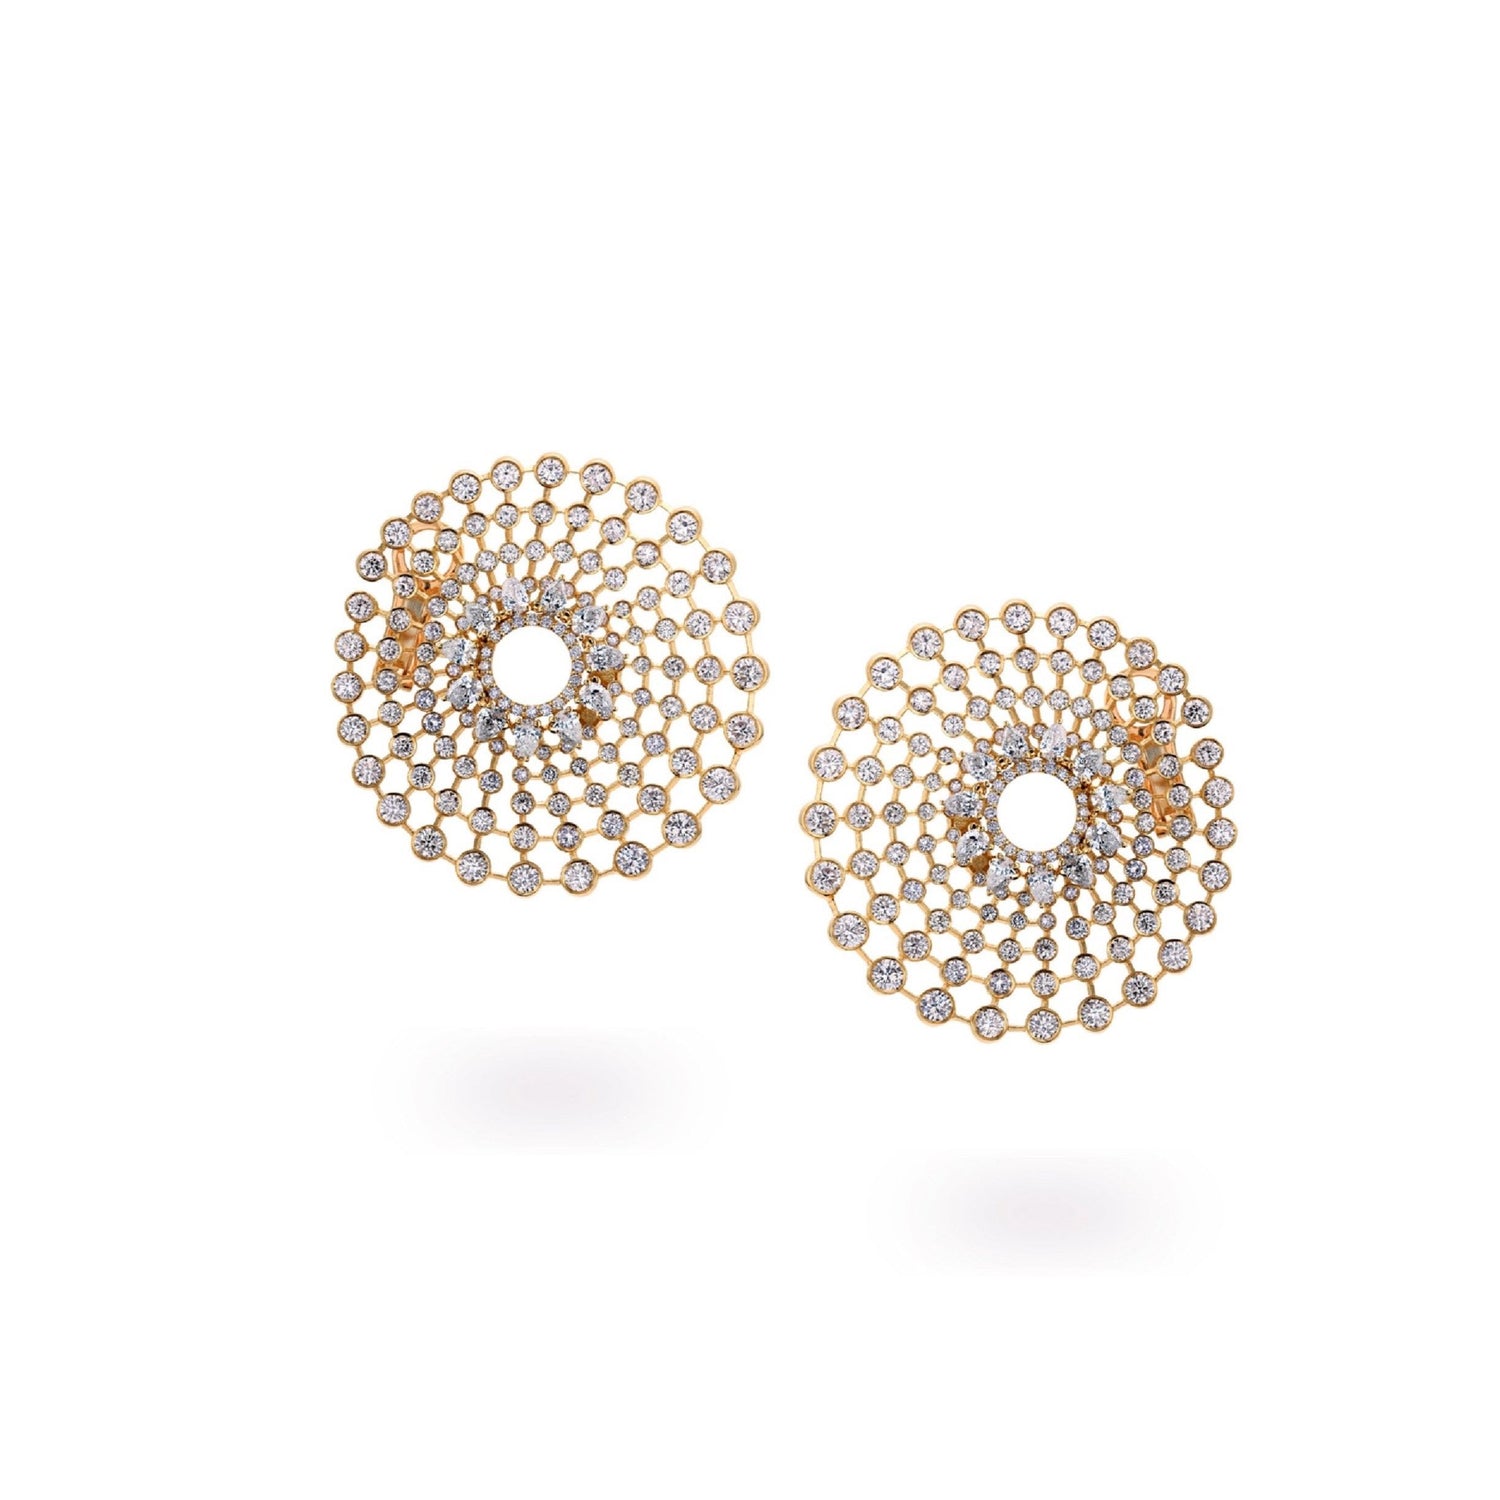 Jewelry online Dubai | Diamond earring in Saudi Arabia